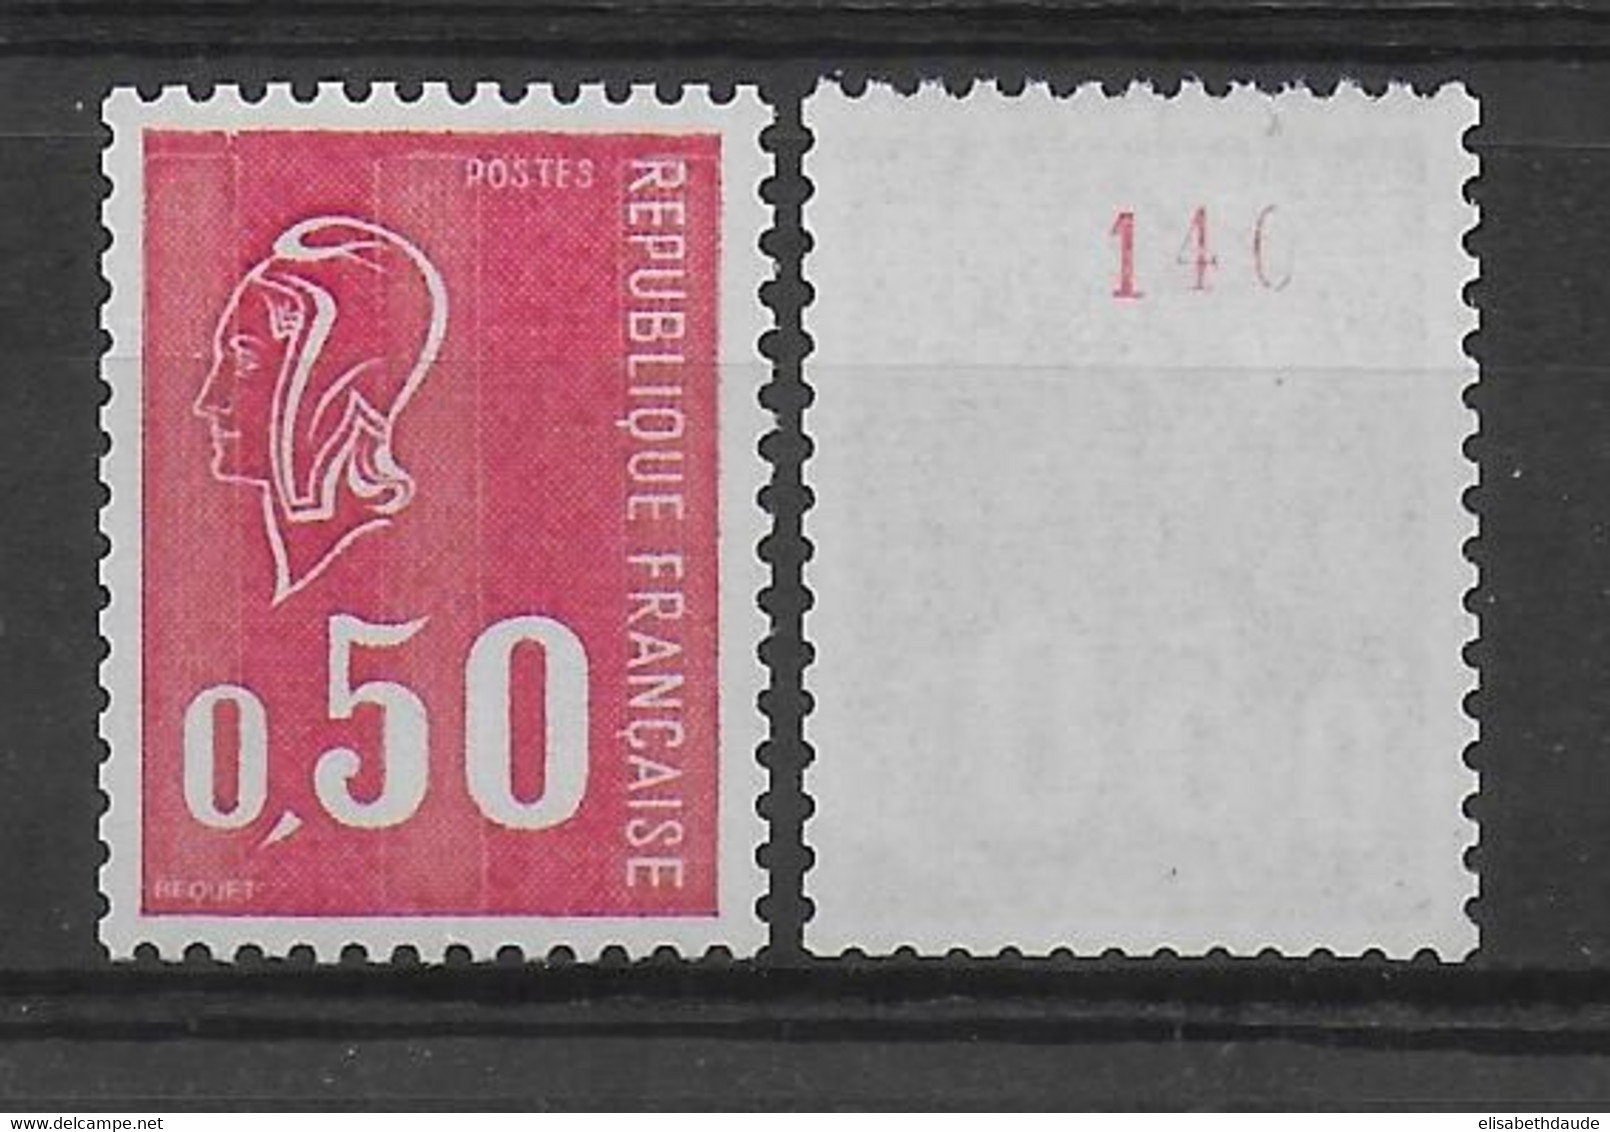 MARIANNE De BEQUET - ROULETTE N° ROUGE - YVERT 1664e 3 BANDES PHOSPHORE - COTE = 25 EUR - Coil Stamps